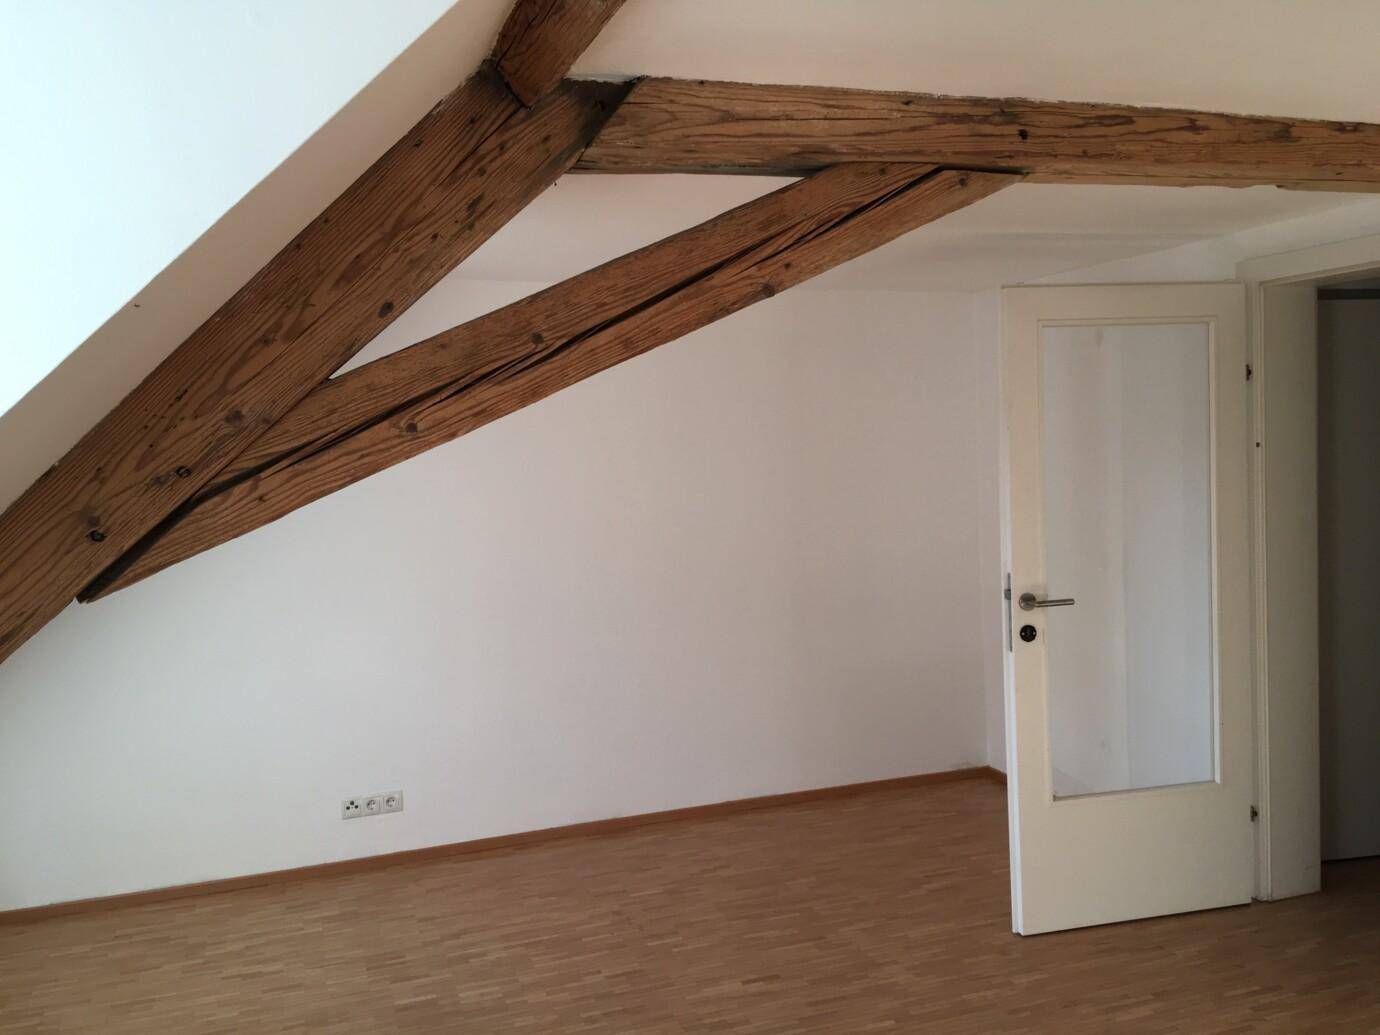 Dachboden mit Dachschräge, leerer Raum mit Holzboden und Tür in anderen Raum